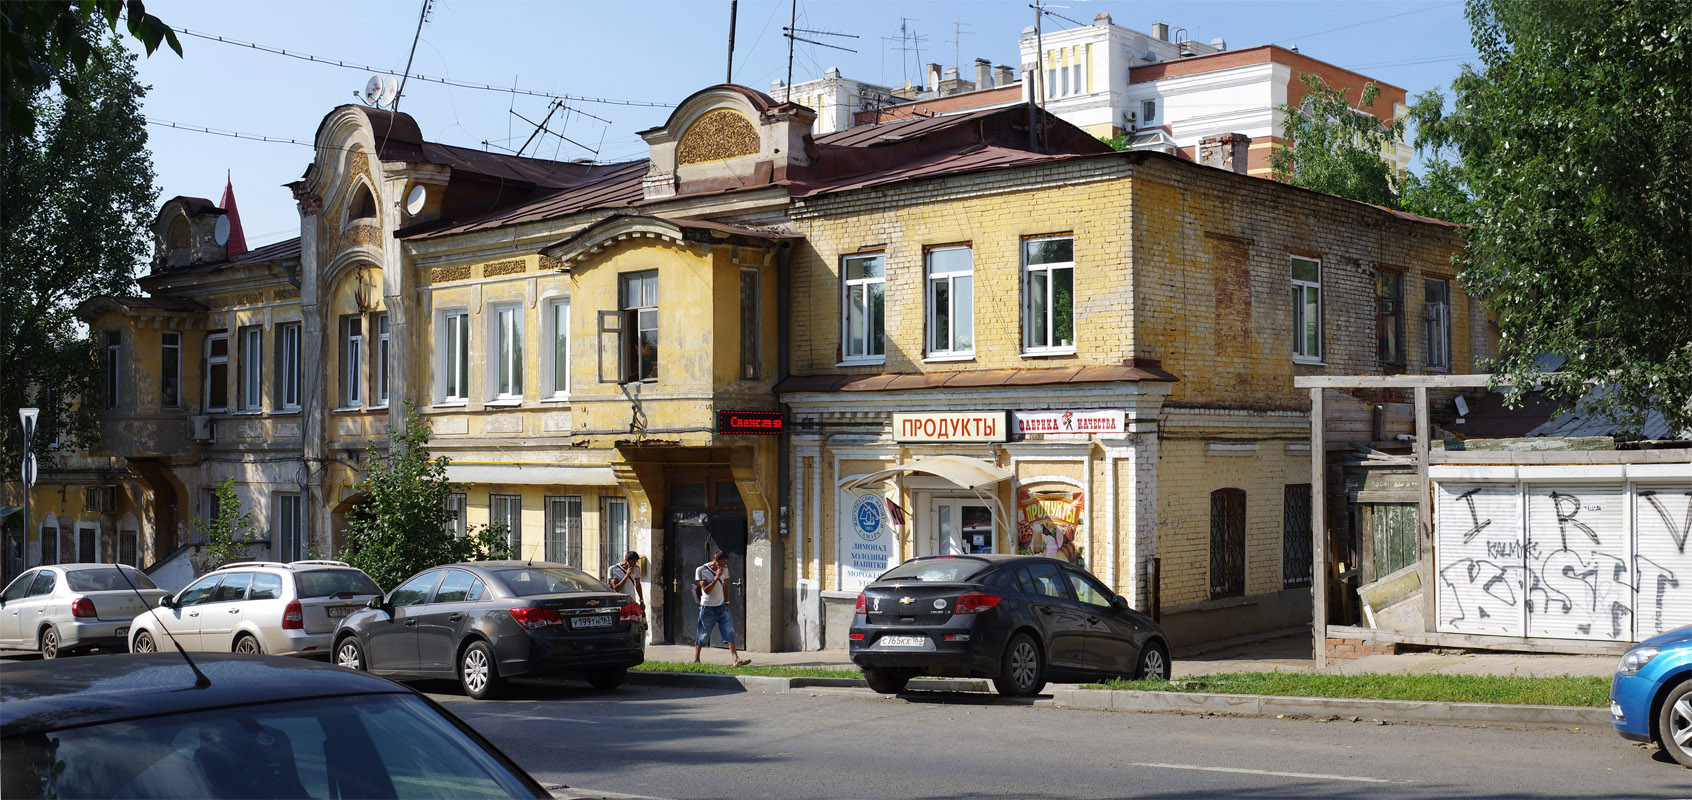 Samara, Улица Венцека, 10; Улица Венцека, 12